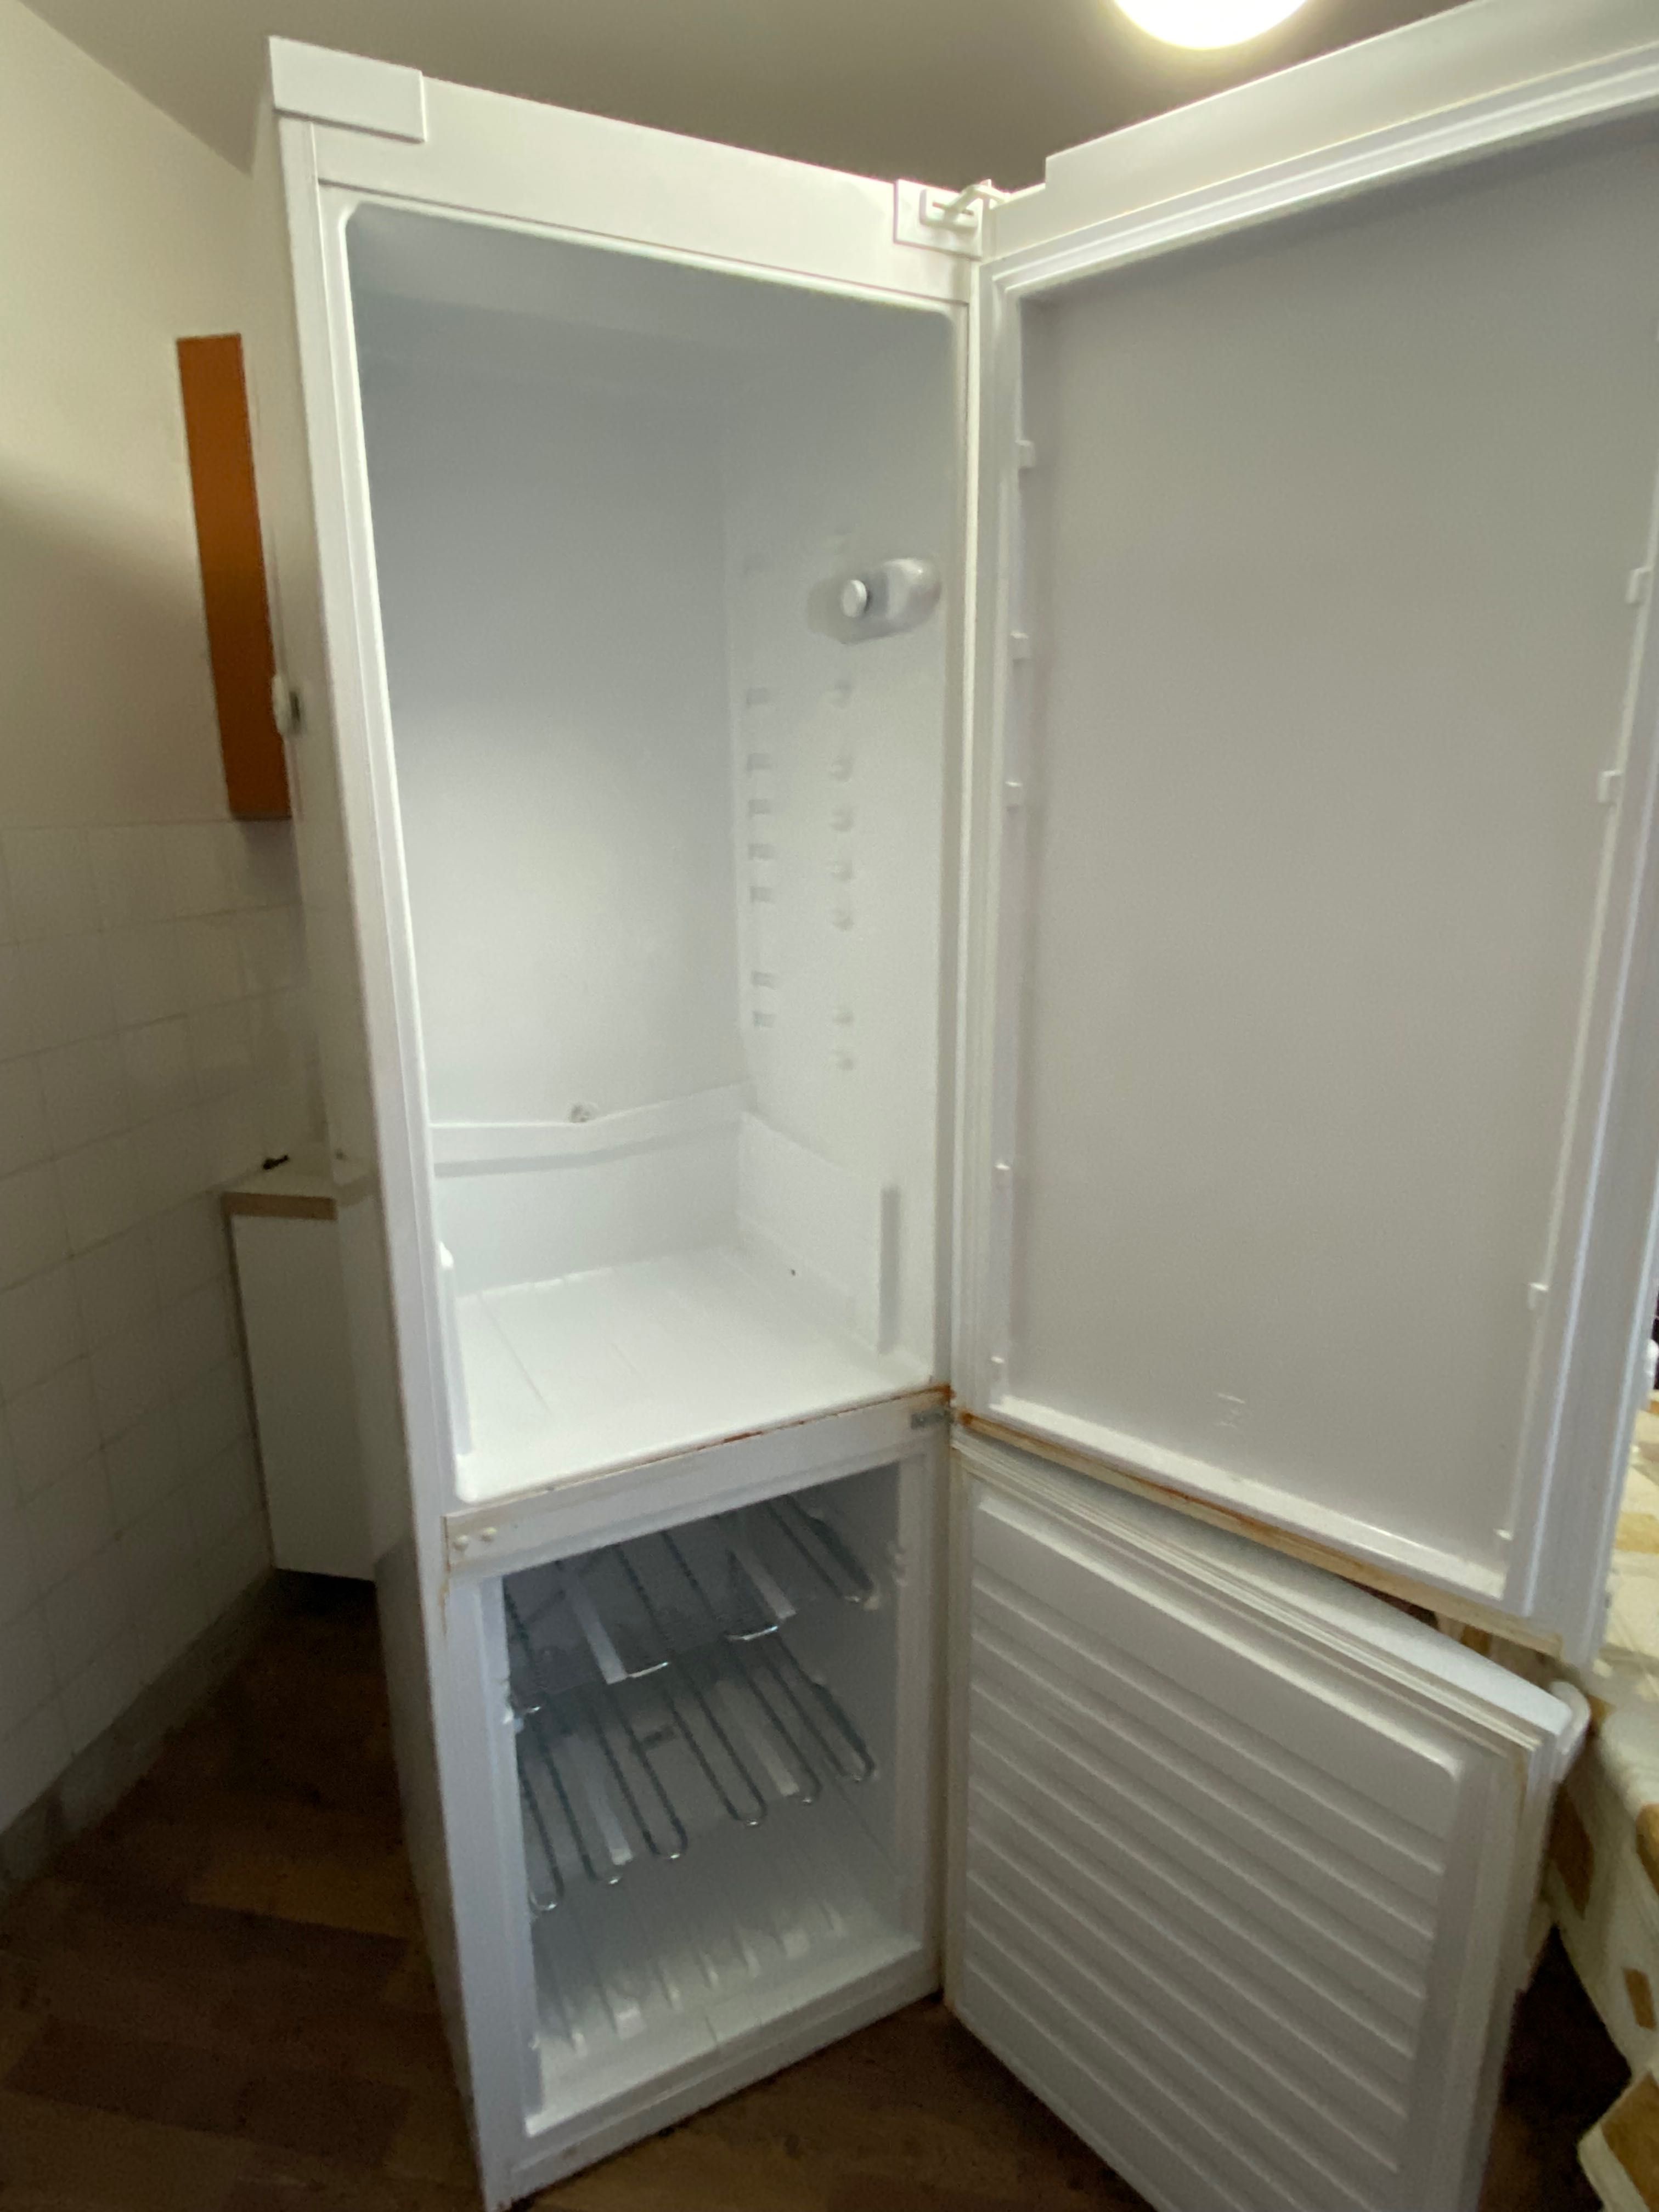 Хладилник Whirlpool, WBE3714 W в добро състояние